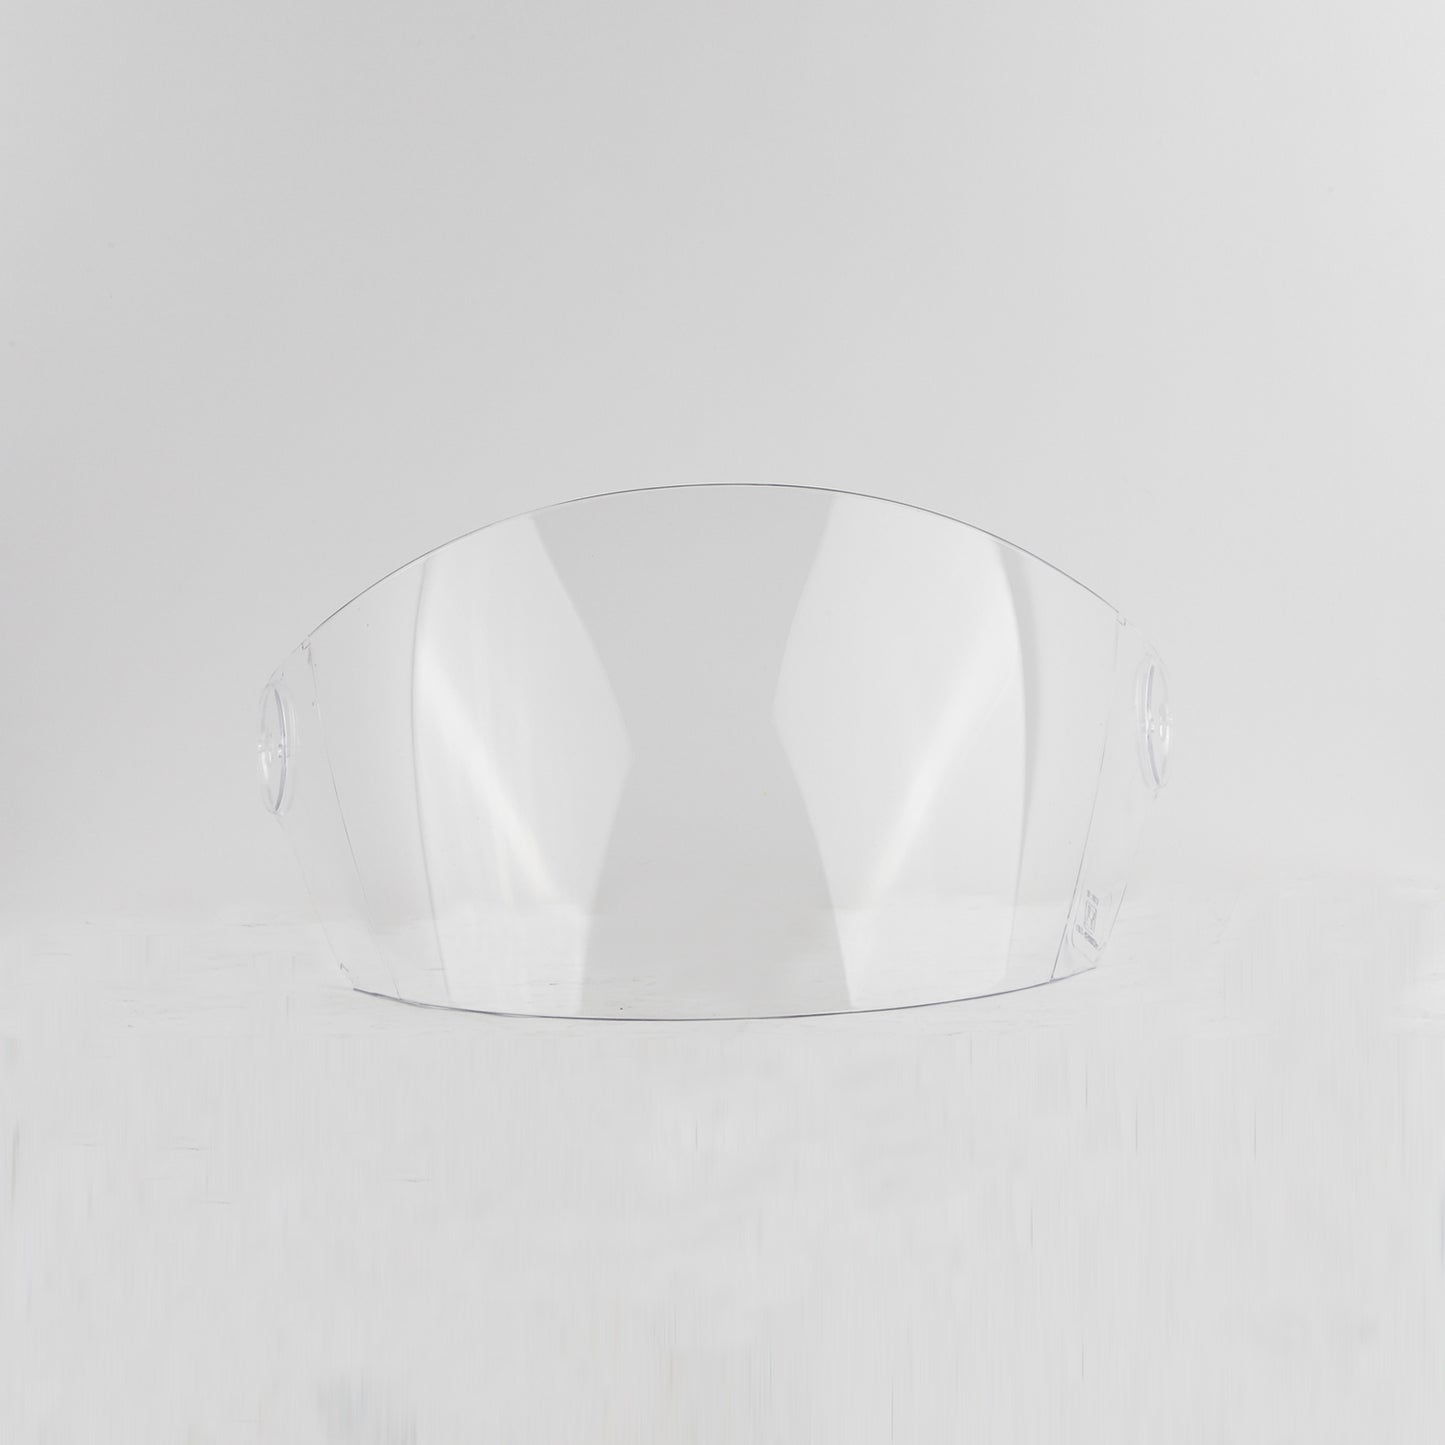 Steelbird SB-29 Helmet Visor Compatible for All SB-29 Model Helmets (Clear Visor)